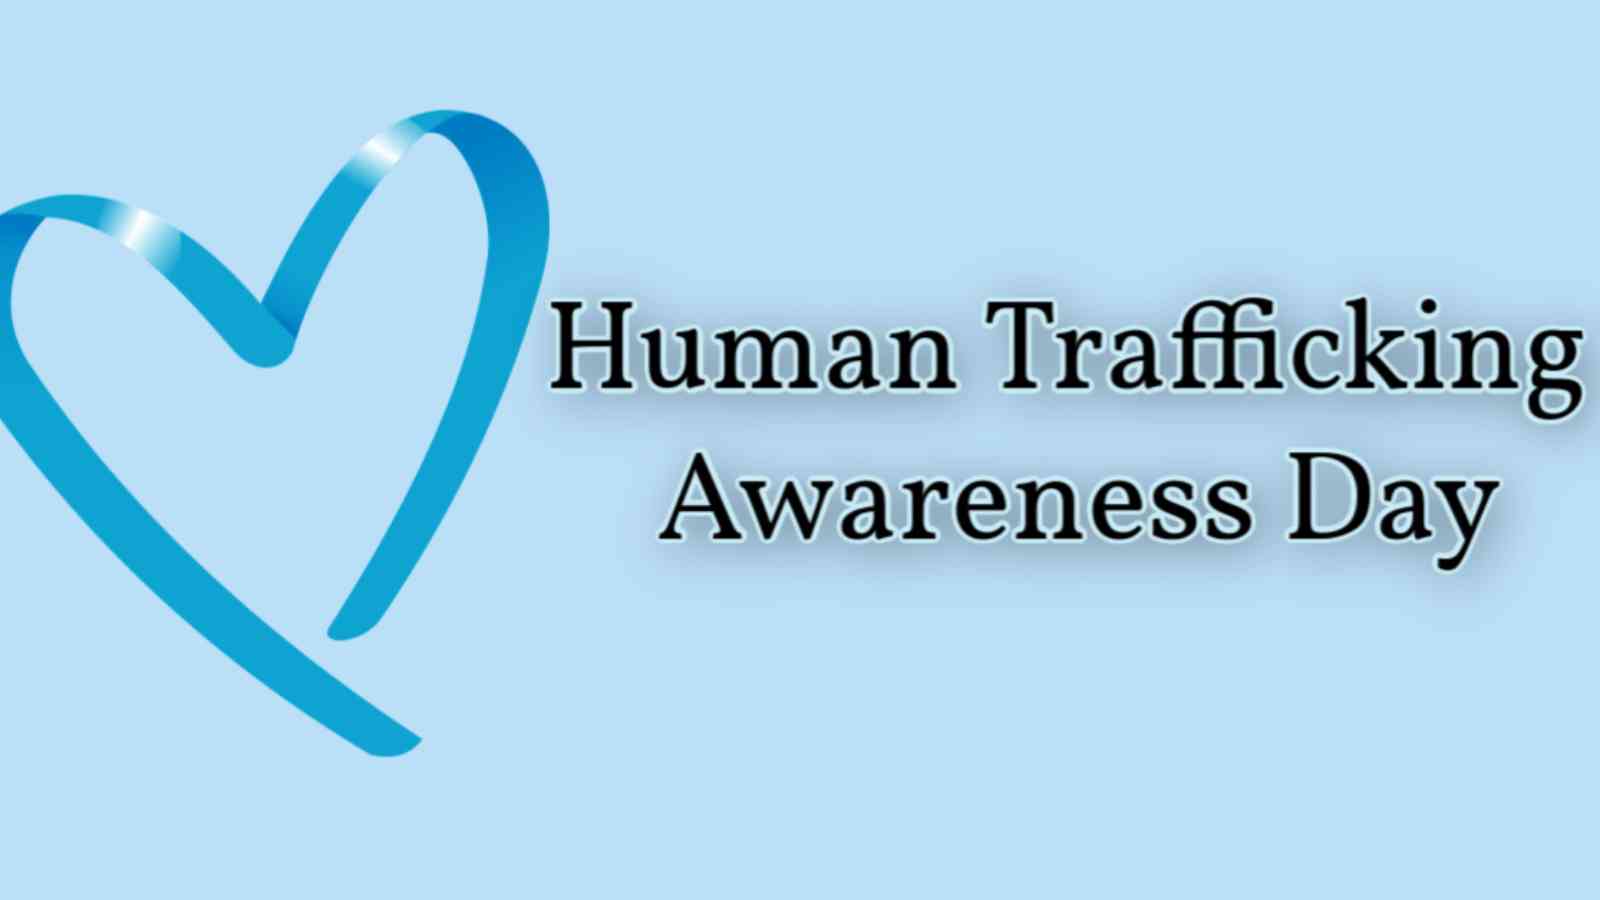 National Human Trafficking Awareness Day